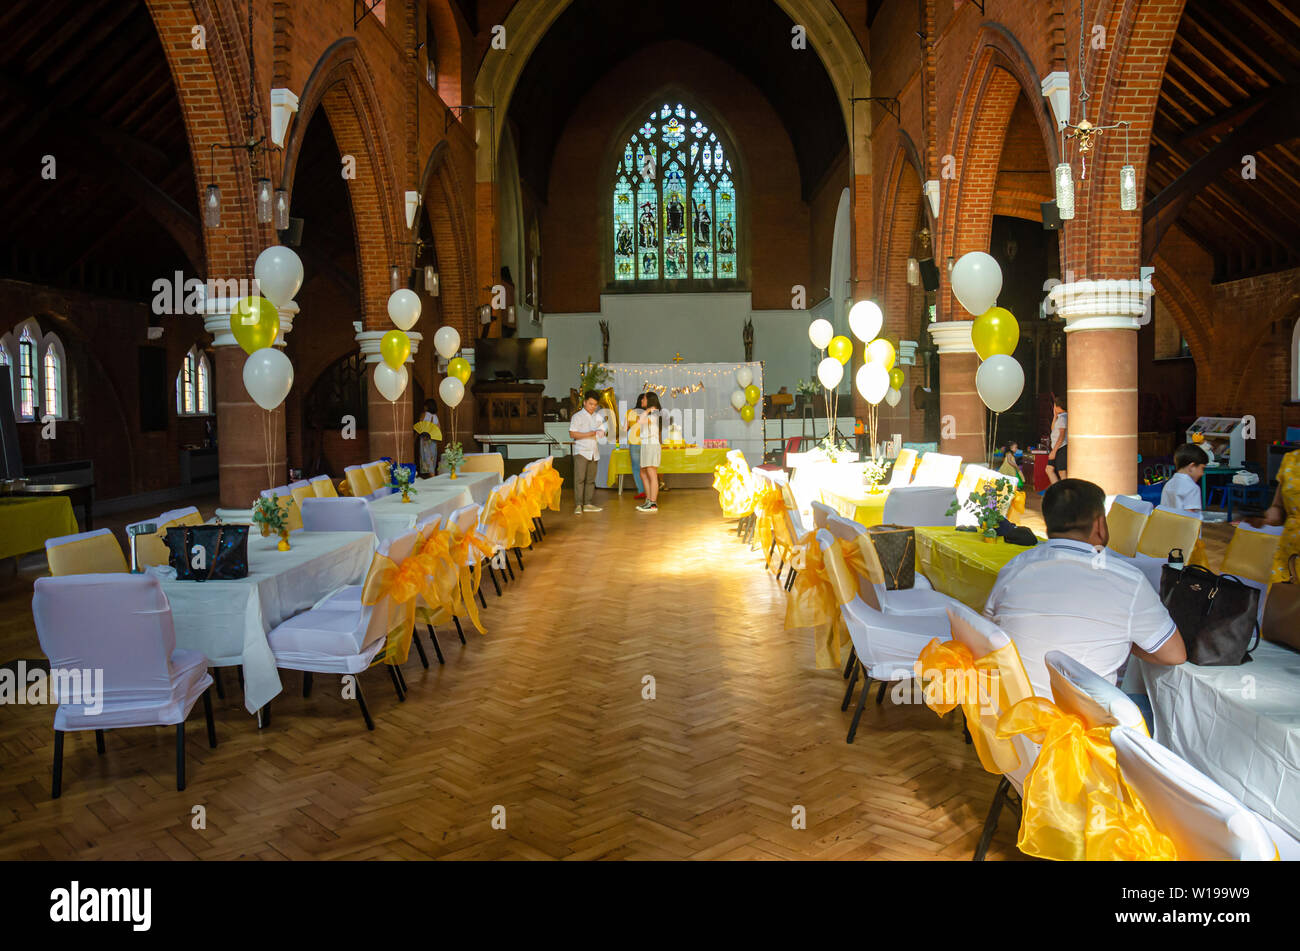 Eine Kirche Halle mit Tischen und Stühlen im weißen Stoff mit gelbem Band Bogen bereit für eine Party oder Rezeption gekleidet. Stockfoto